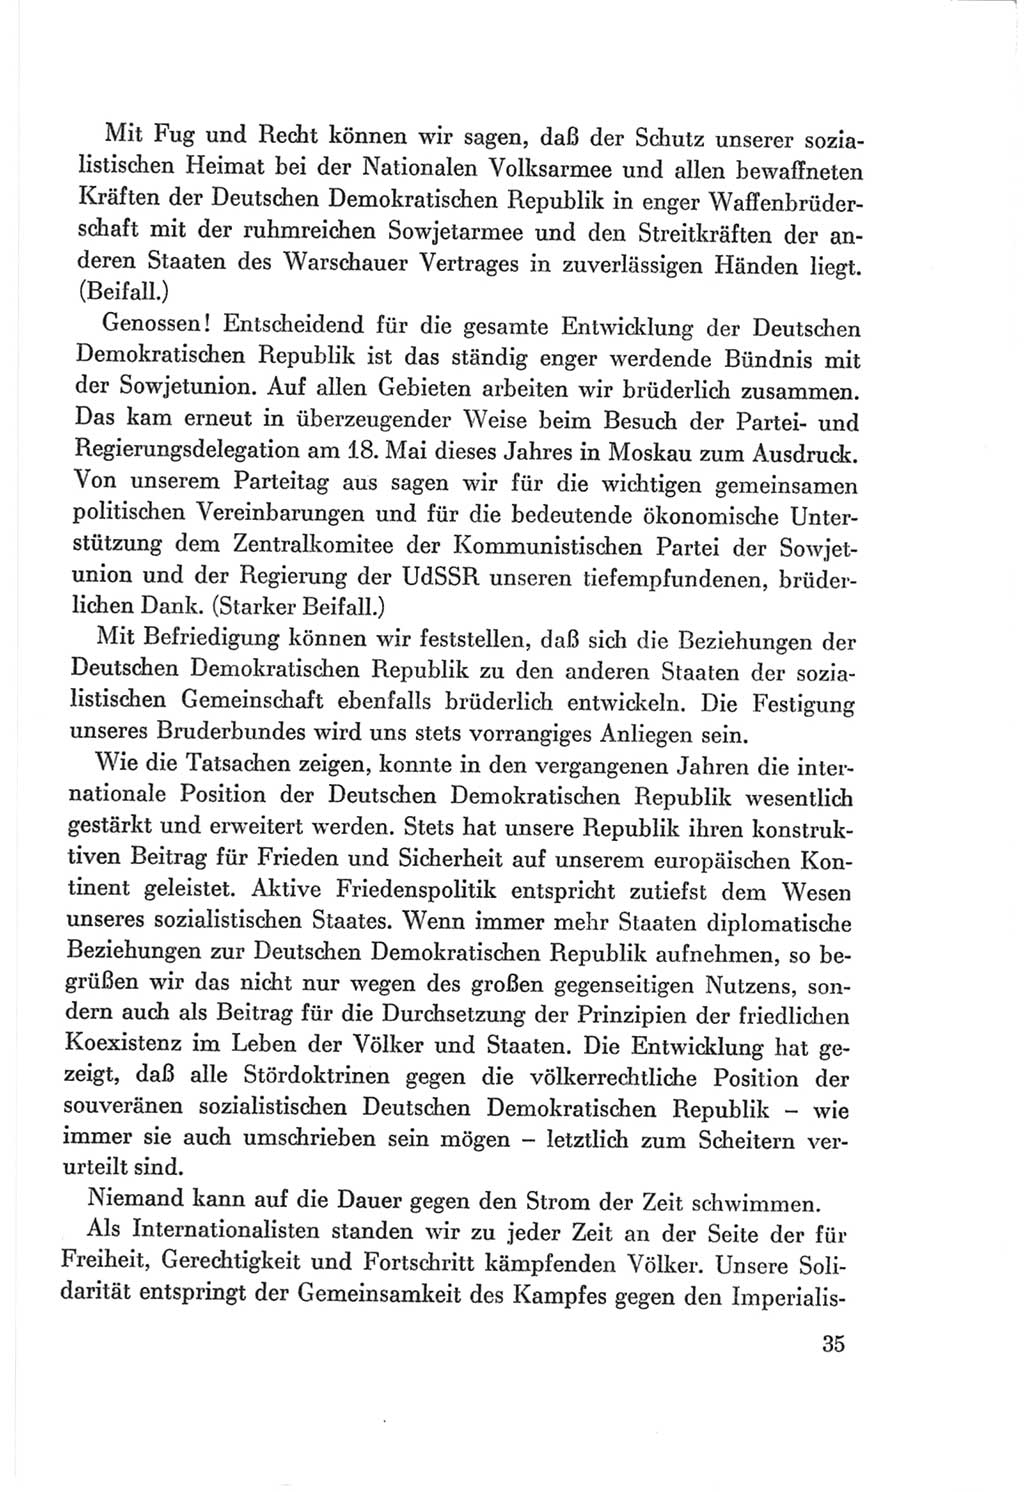 Protokoll der Verhandlungen des Ⅷ. Parteitages der Sozialistischen Einheitspartei Deutschlands (SED) [Deutsche Demokratische Republik (DDR)] 1971, Band 1, Seite 35 (Prot. Verh. Ⅷ. PT SED DDR 1971, Bd. 1, S. 35)